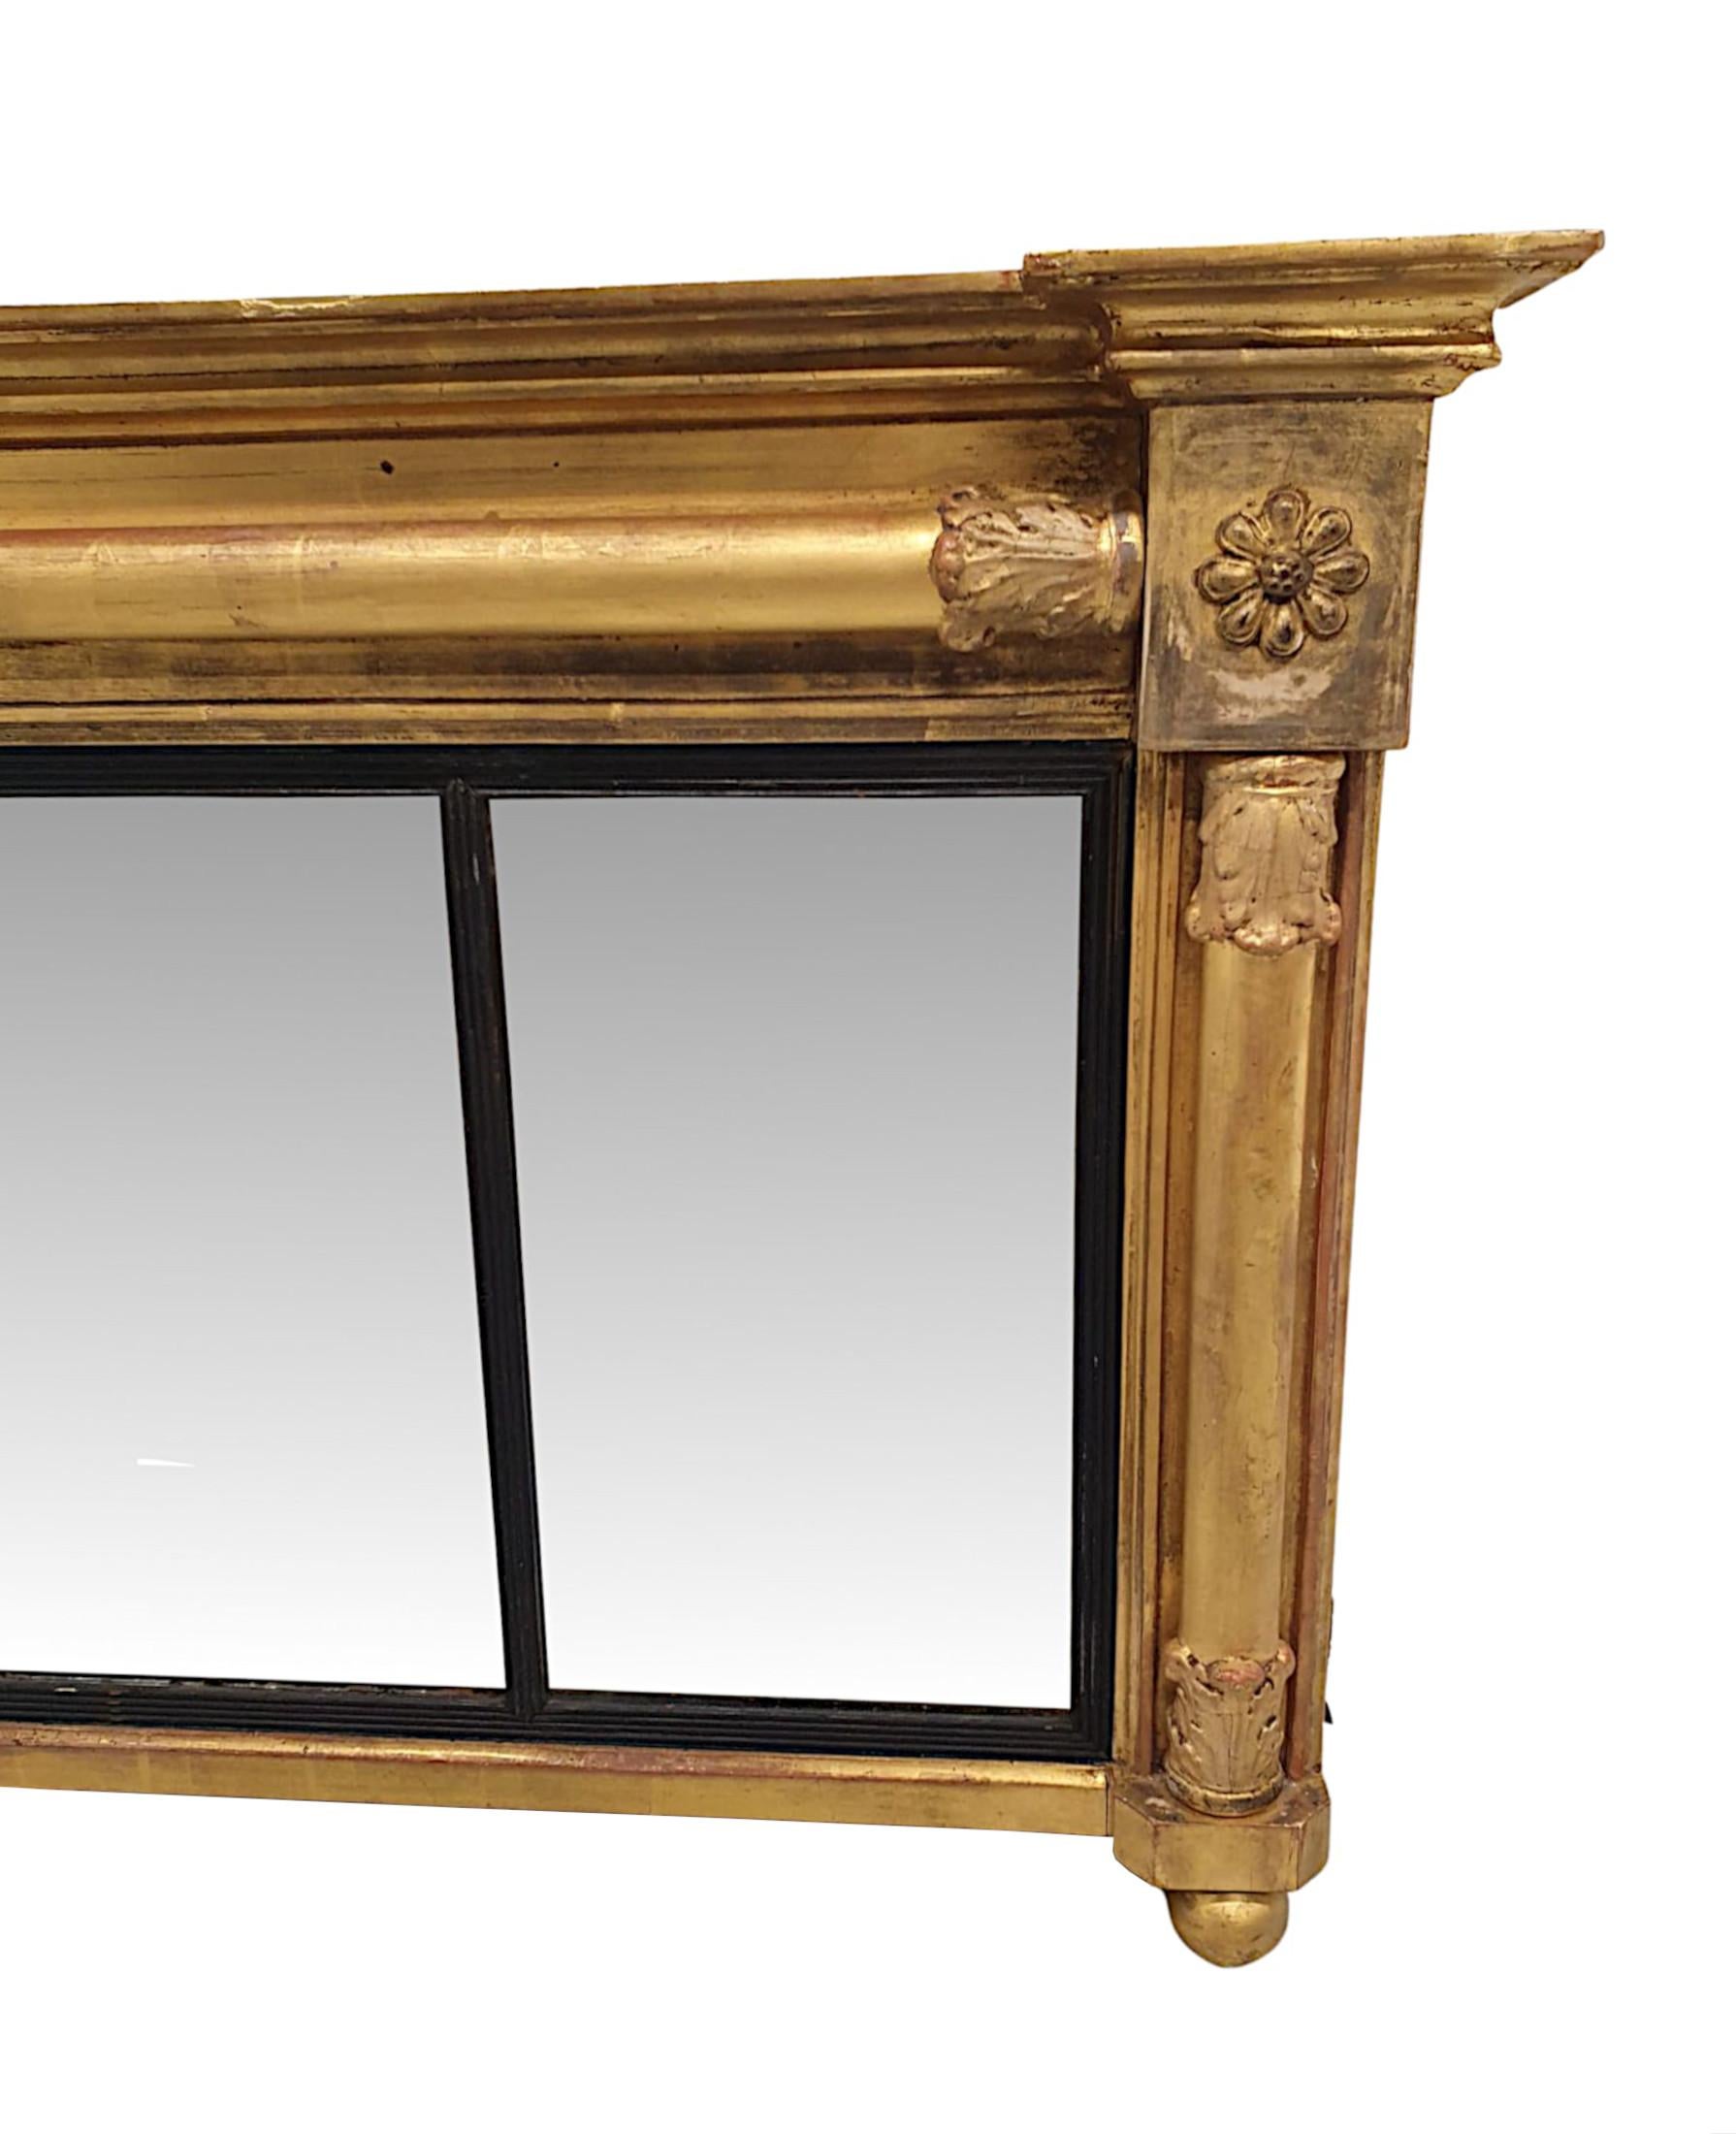 Eine fabelhafte und ungewöhnliche frühen 19. Jahrhundert William IV vergoldetem Holz compartmental Spiegel, fein von Hand geschnitzt, von schöner Qualität und niedrig und breit Proportionen.  Der geformte und kannelierte Rahmen aus vergoldetem Holz